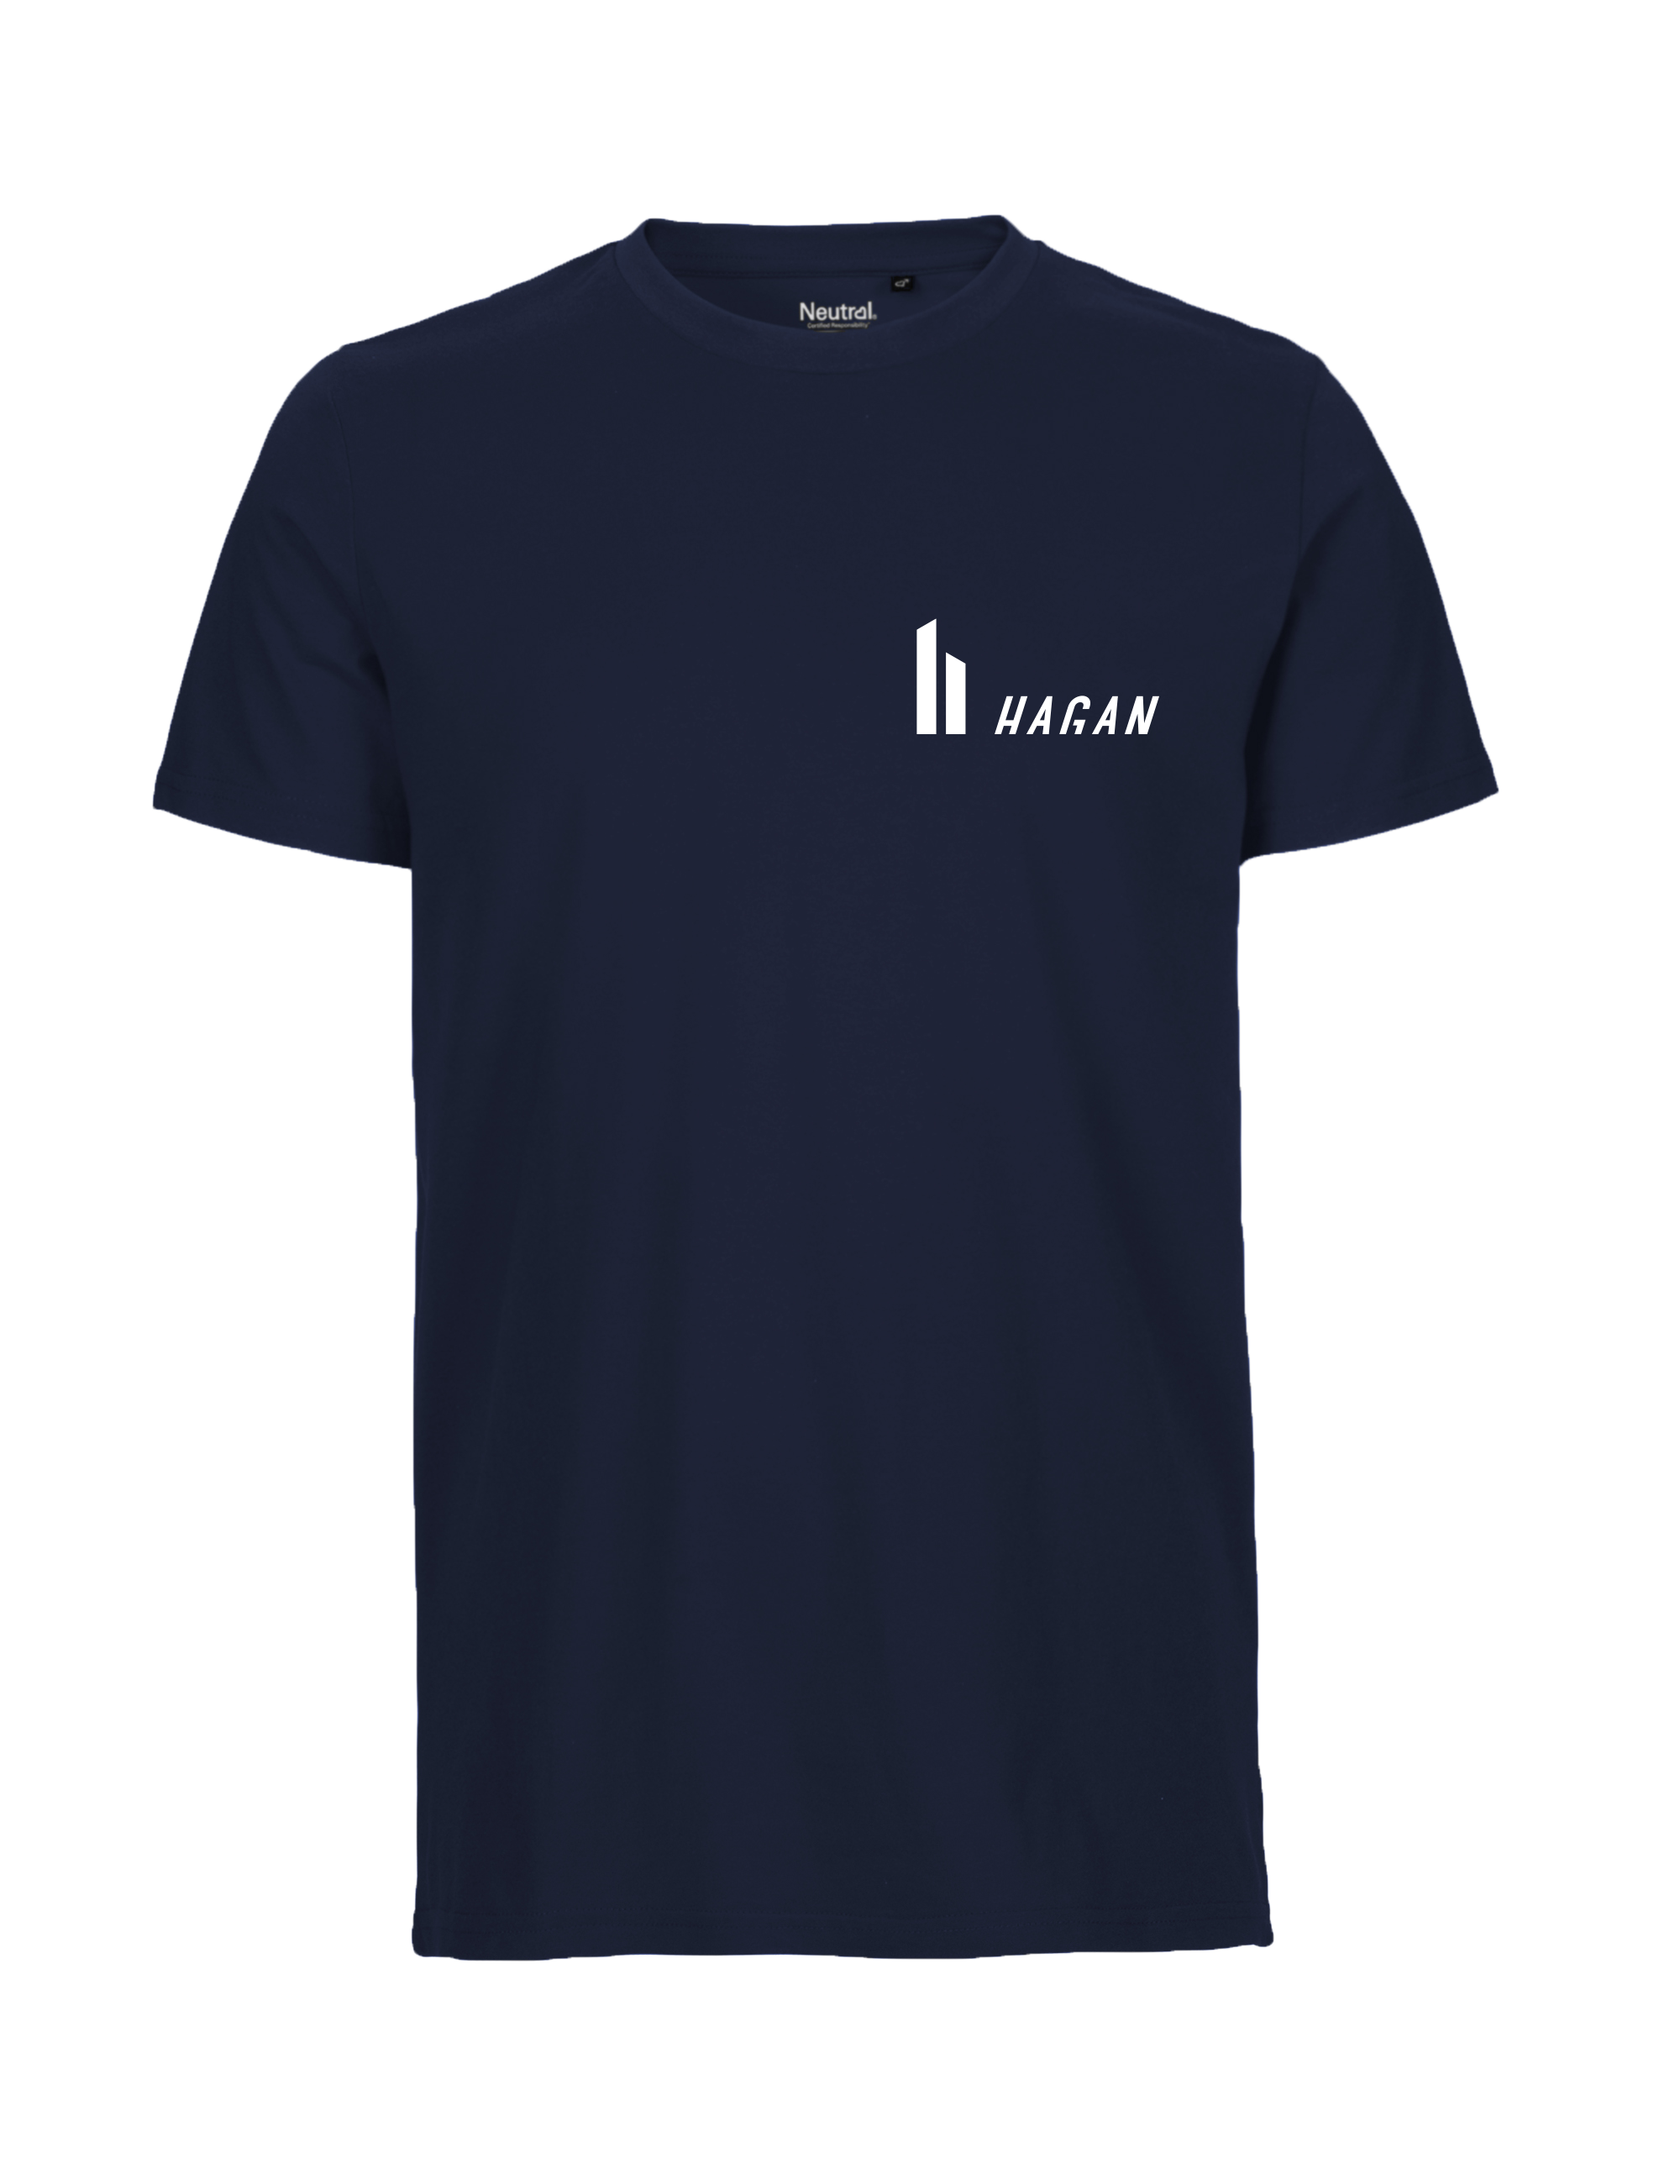 HAGAN Men's T-Shirt